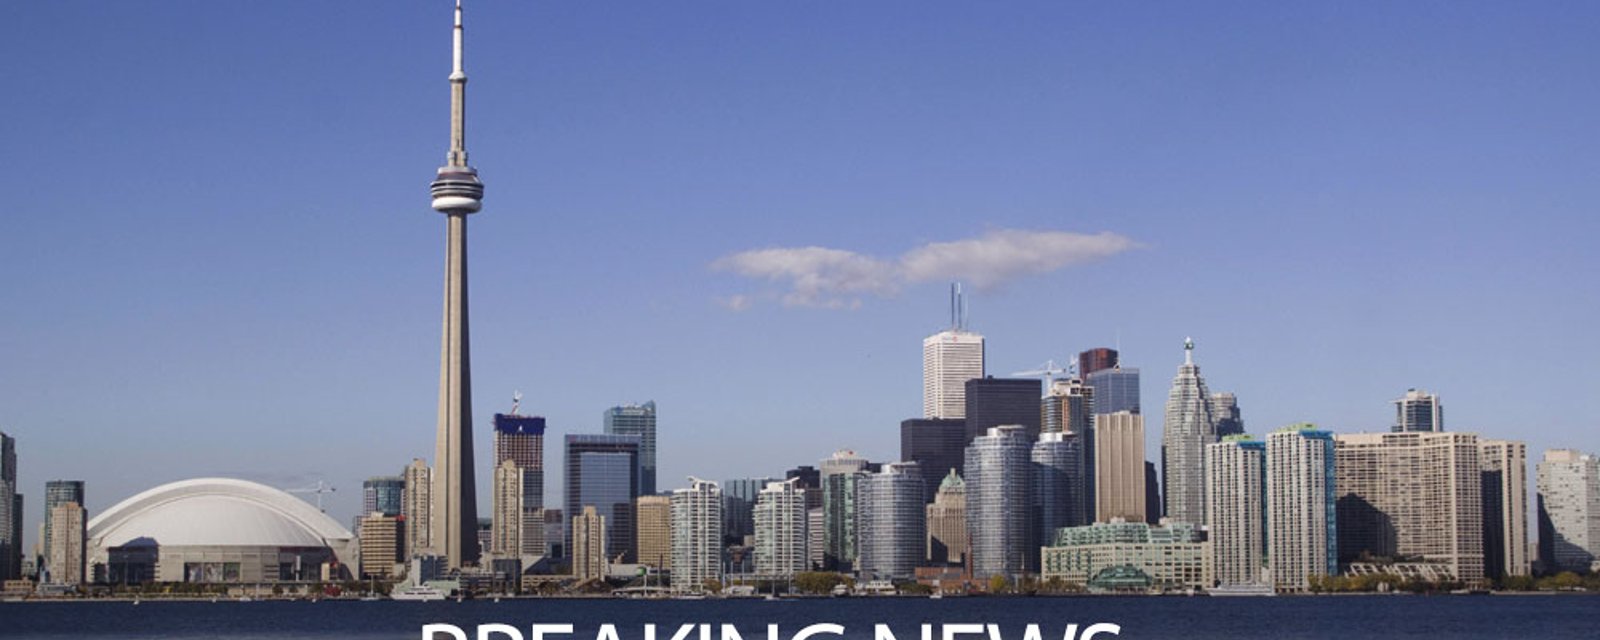 Toronto star suspended for homophobic slur